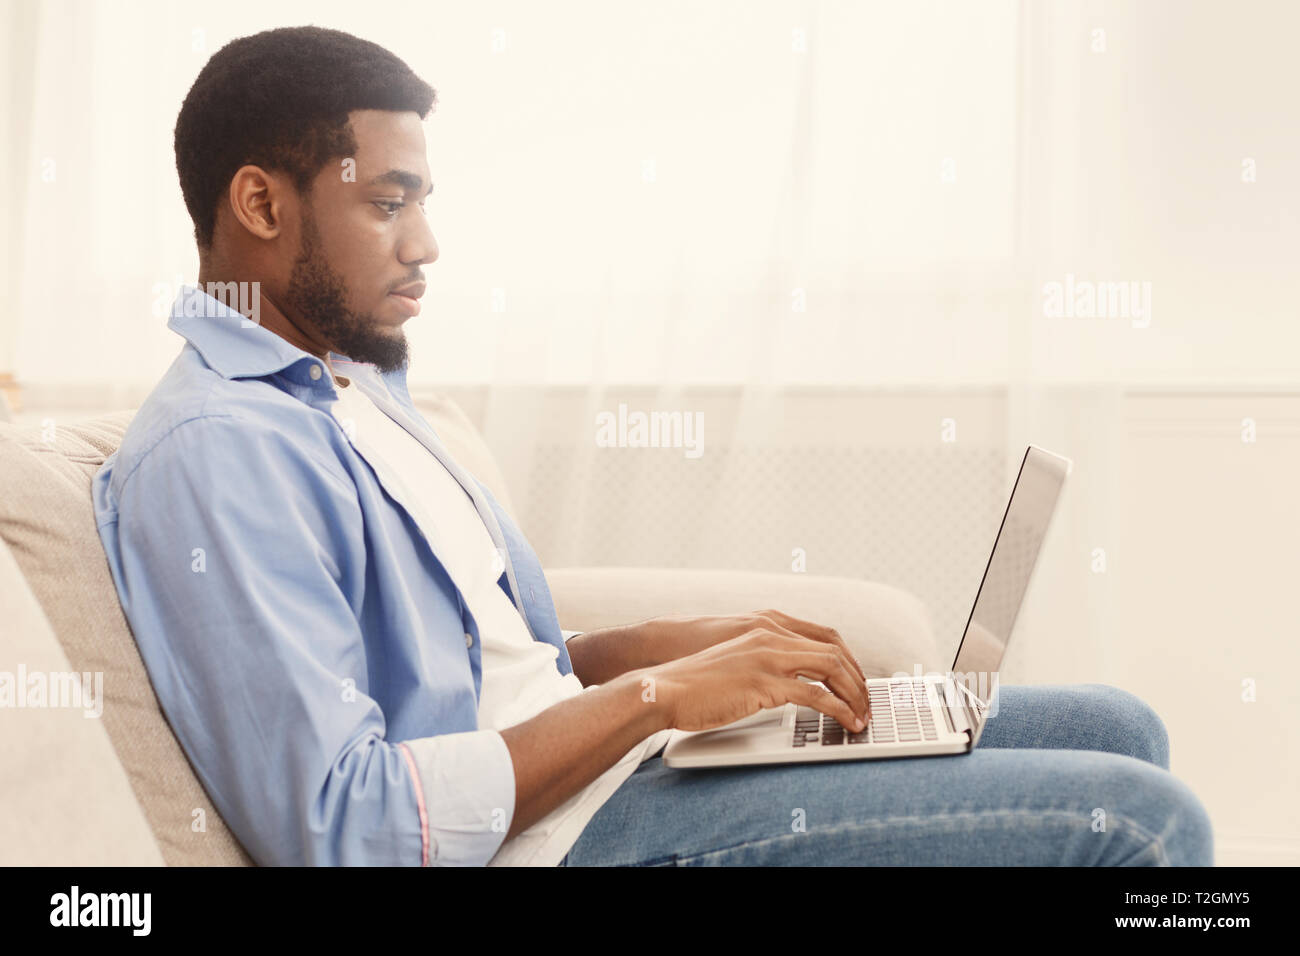 Einstellung Konzept. African-american Guy surfen Arbeitsmöglichkeiten online Job search App oder Website auf Laptop, leeren Raum Stockfoto